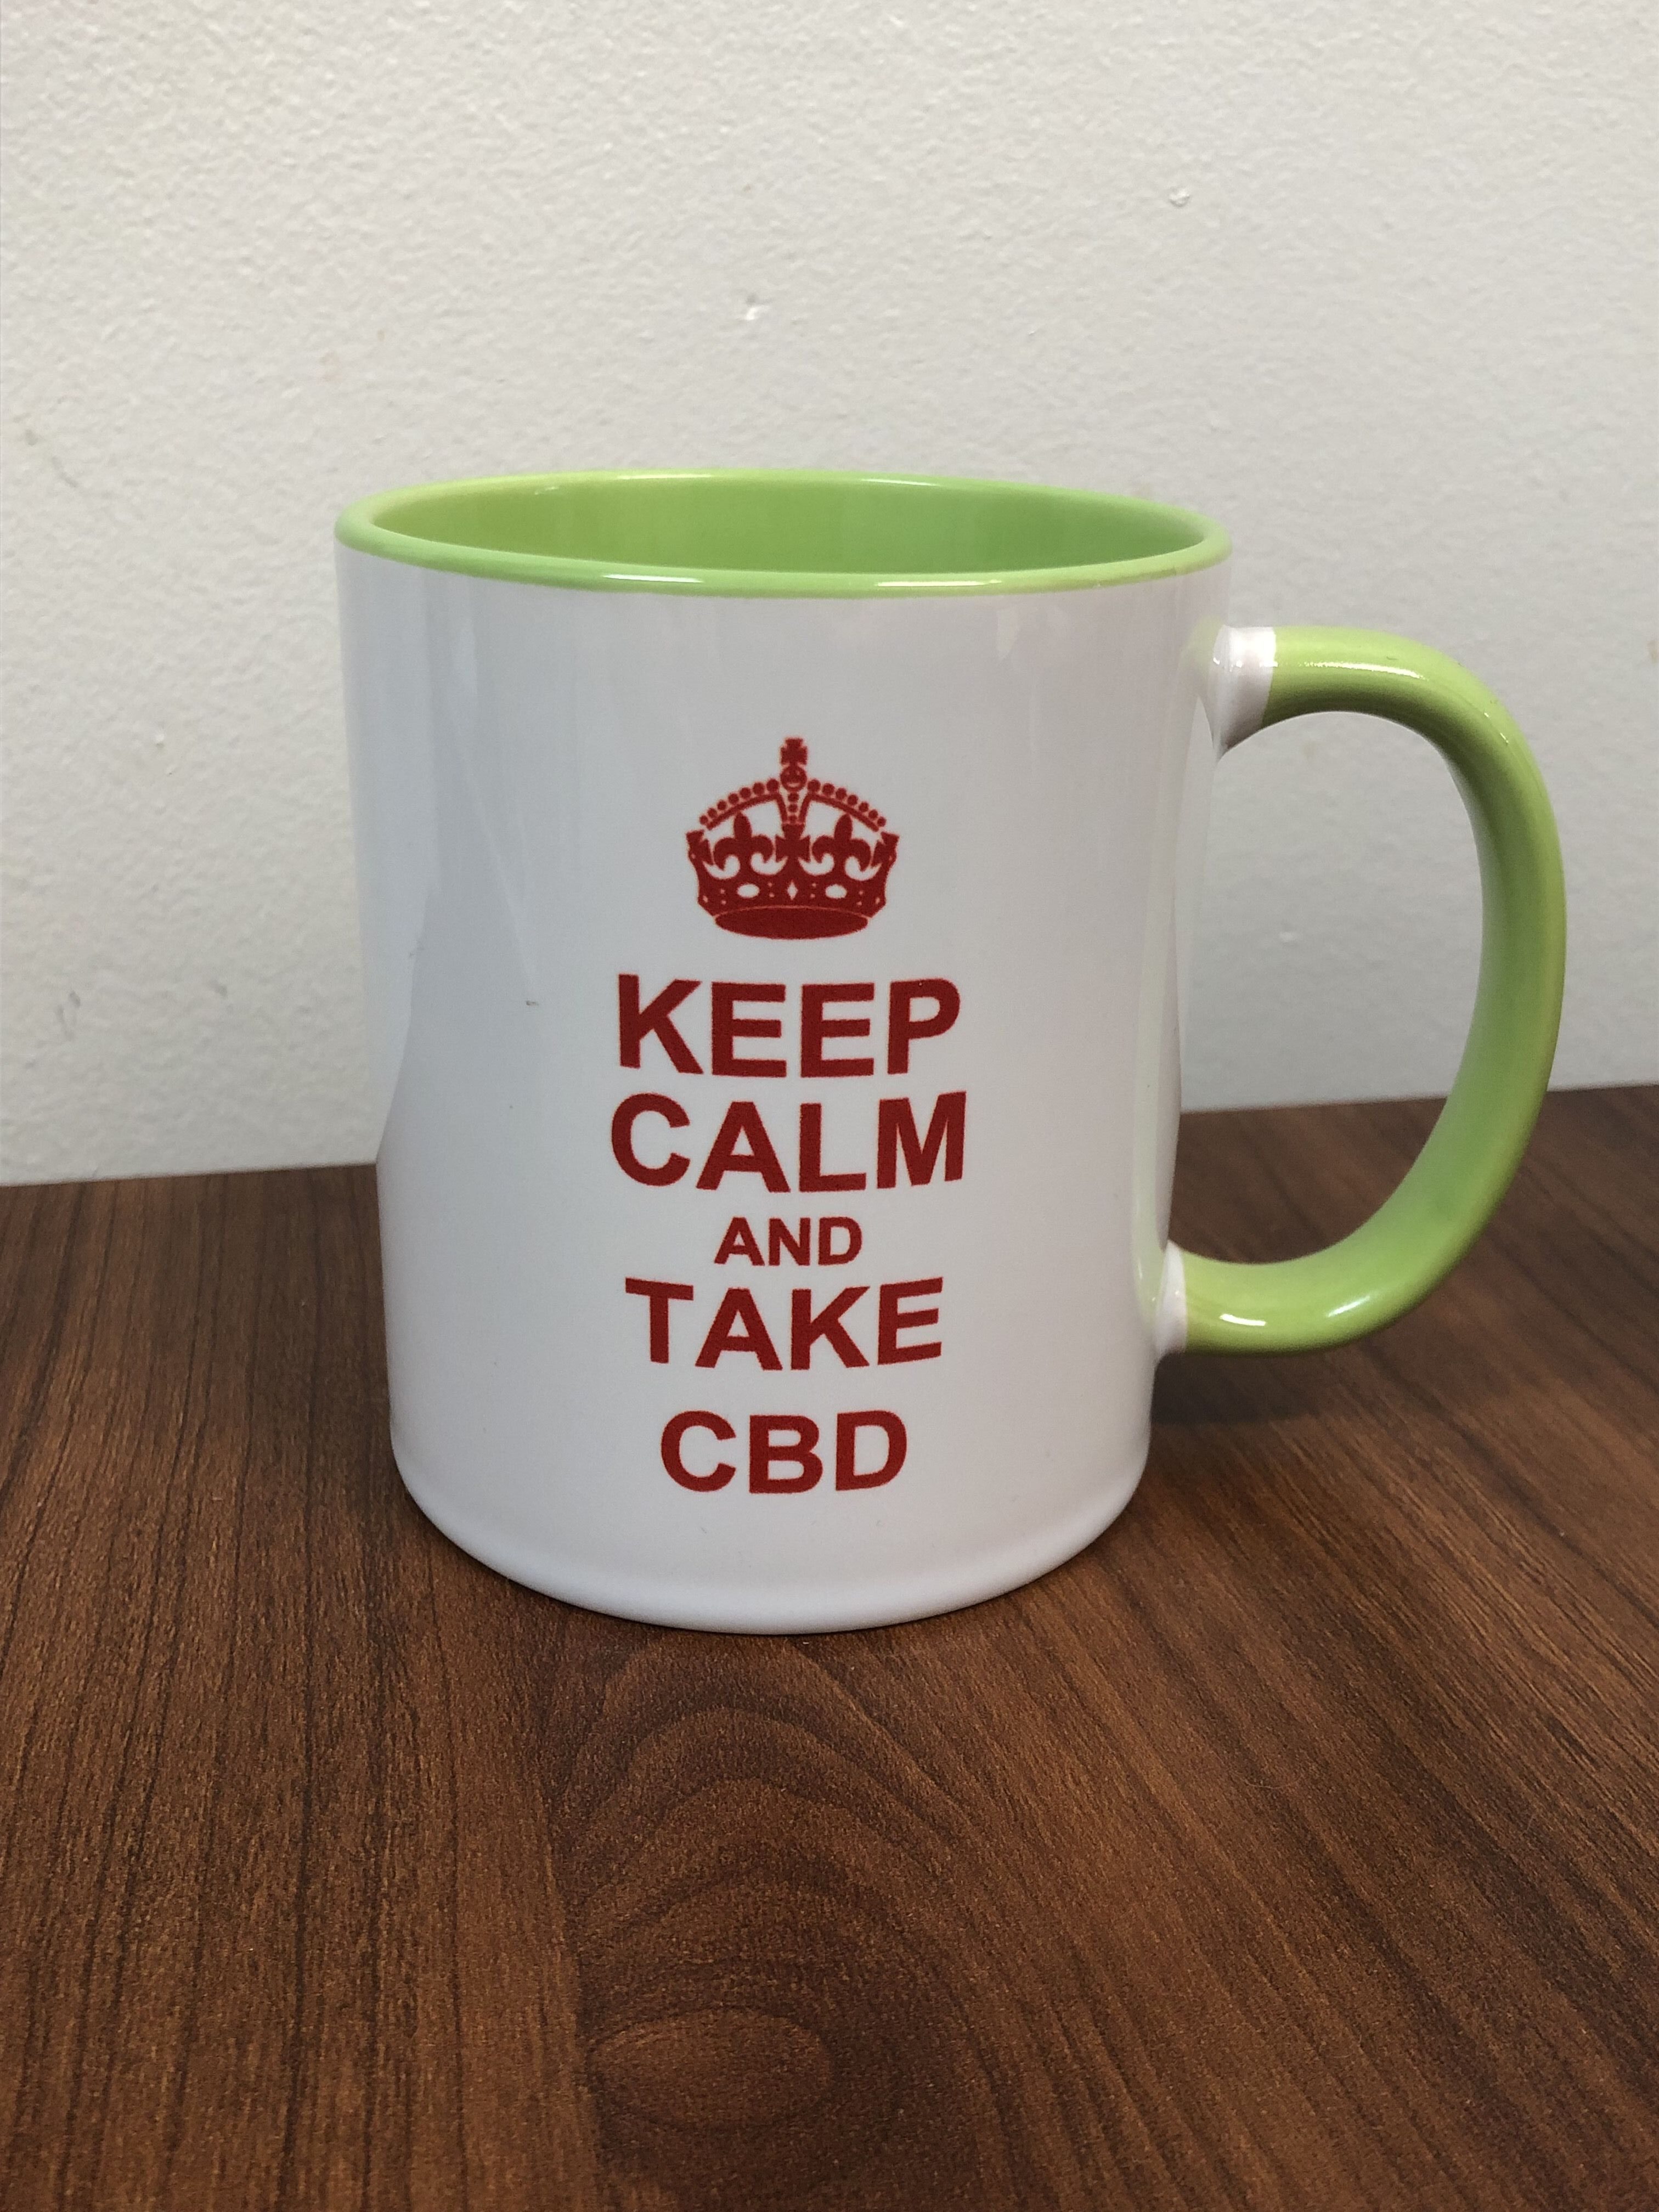 “Keep Calm and Take CBD” mug